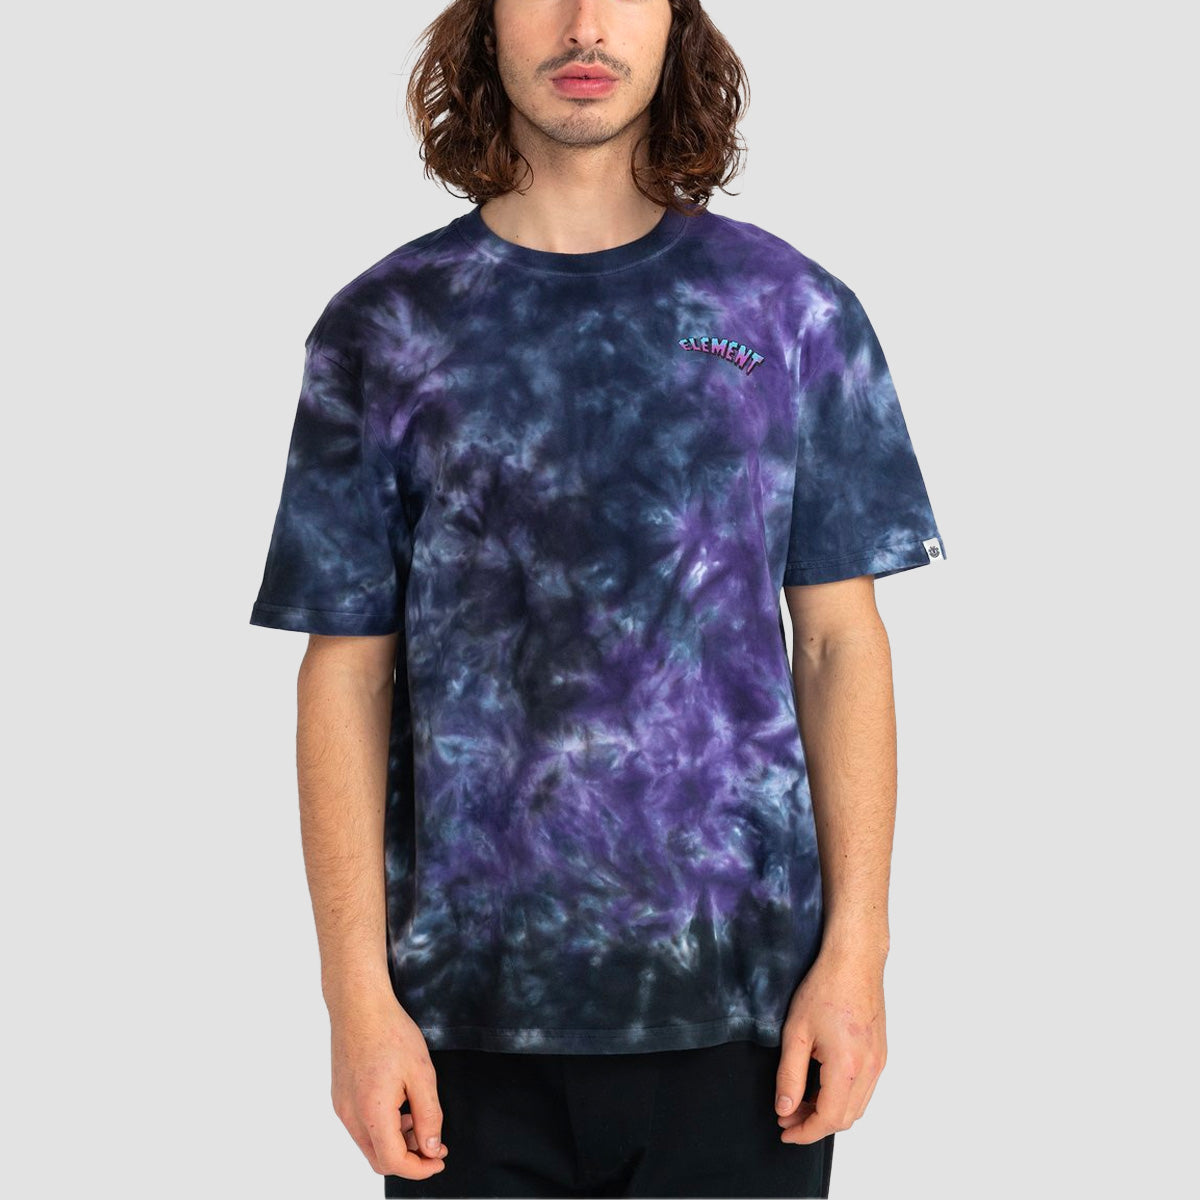 Element Battleorld T-Shirt Galaxy